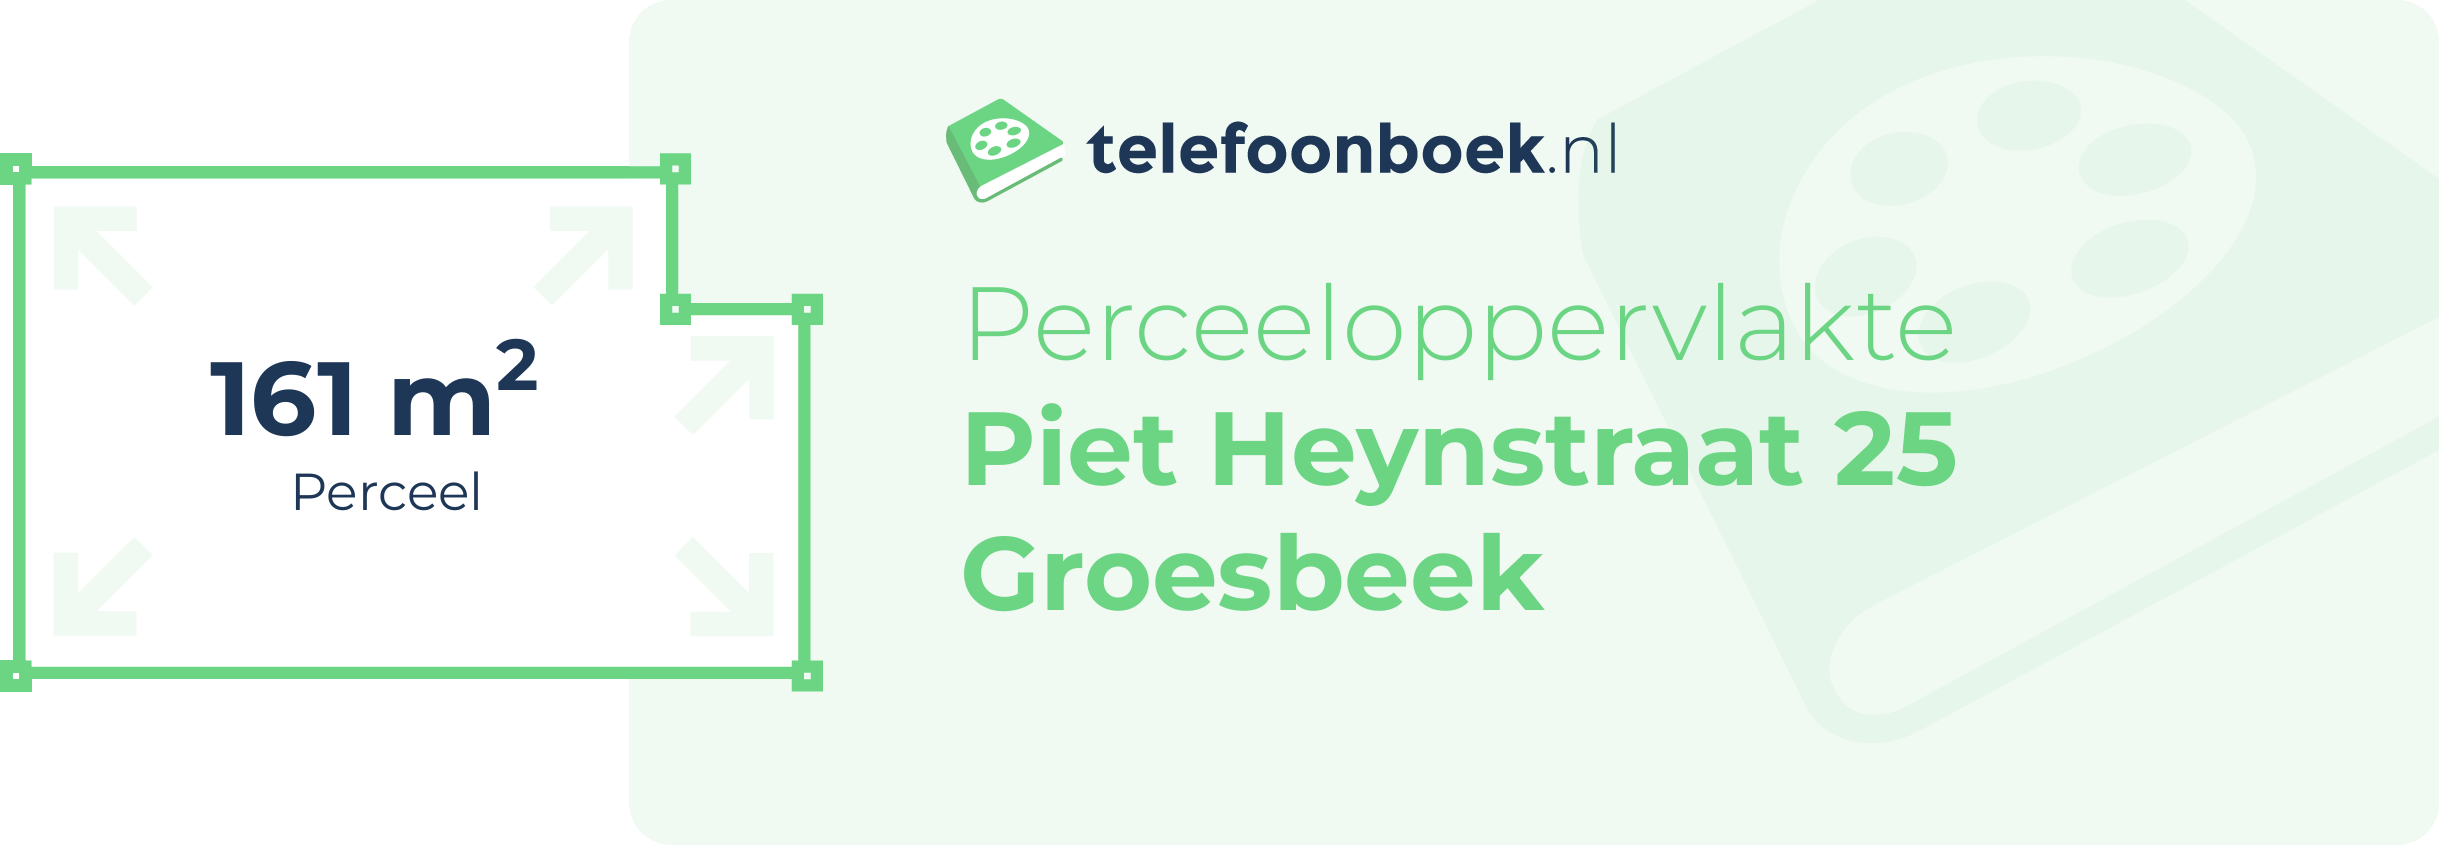 Perceeloppervlakte Piet Heynstraat 25 Groesbeek